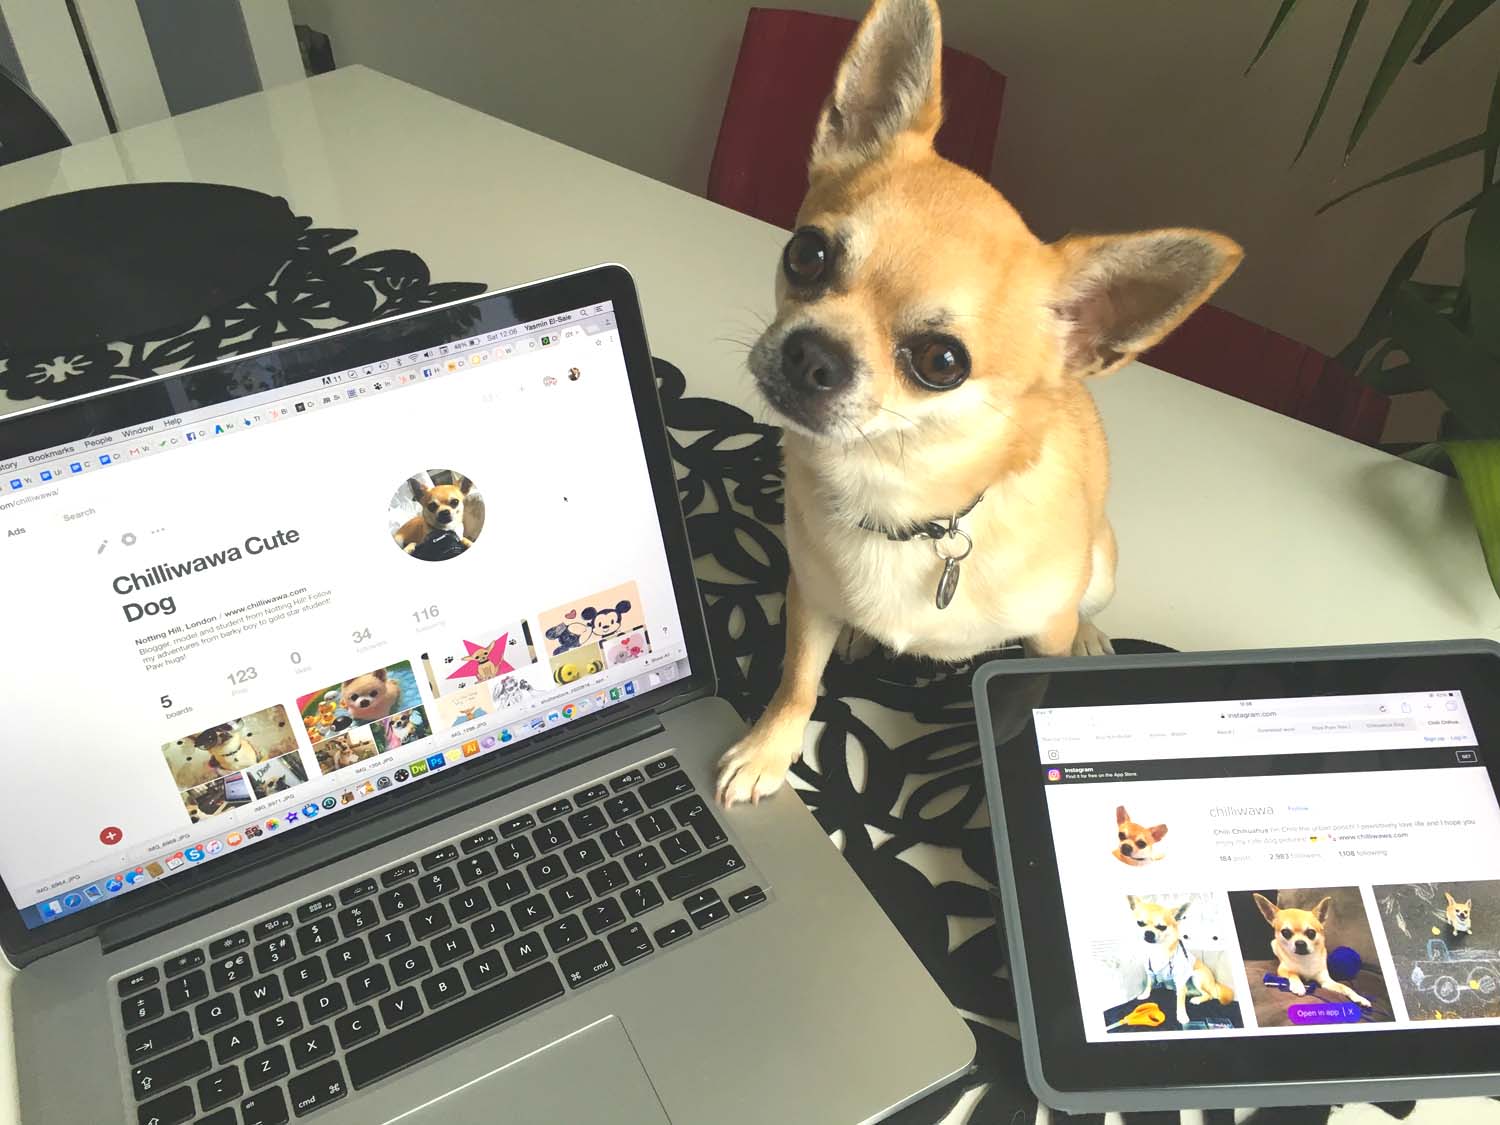 Media Dog Interviews Pinterest Queen!